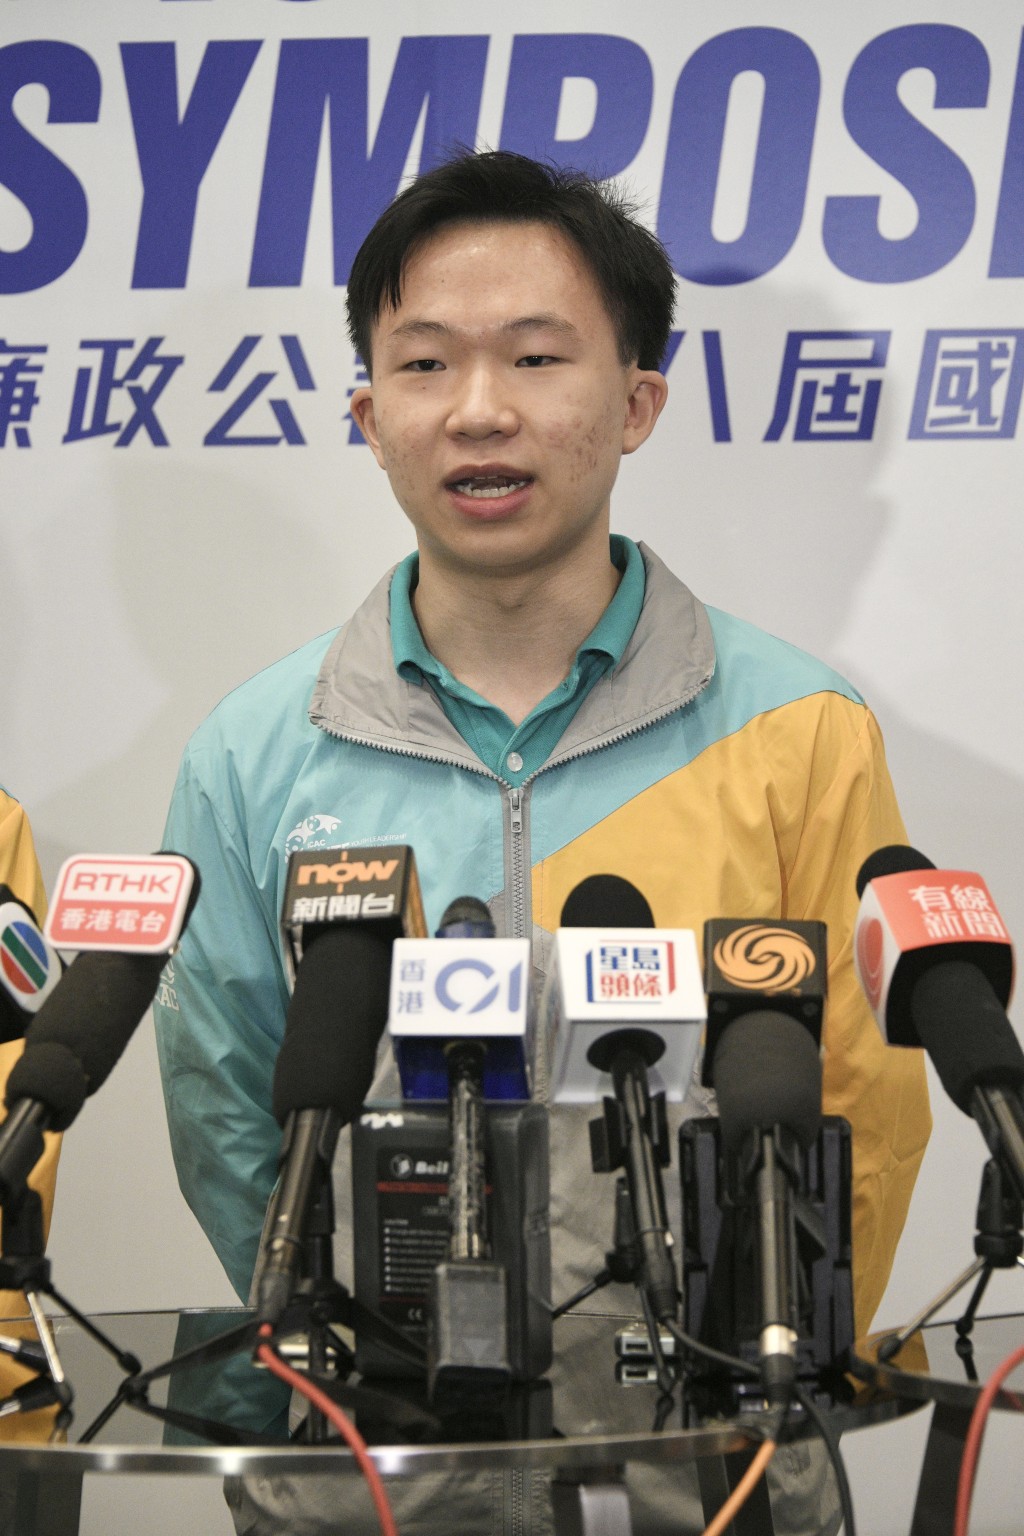 香港大學四年級學生張栢全表示，年輕人不僅是明日的領袖，亦可以是今日的領袖，為打擊貪污出一份力。陳浩元攝